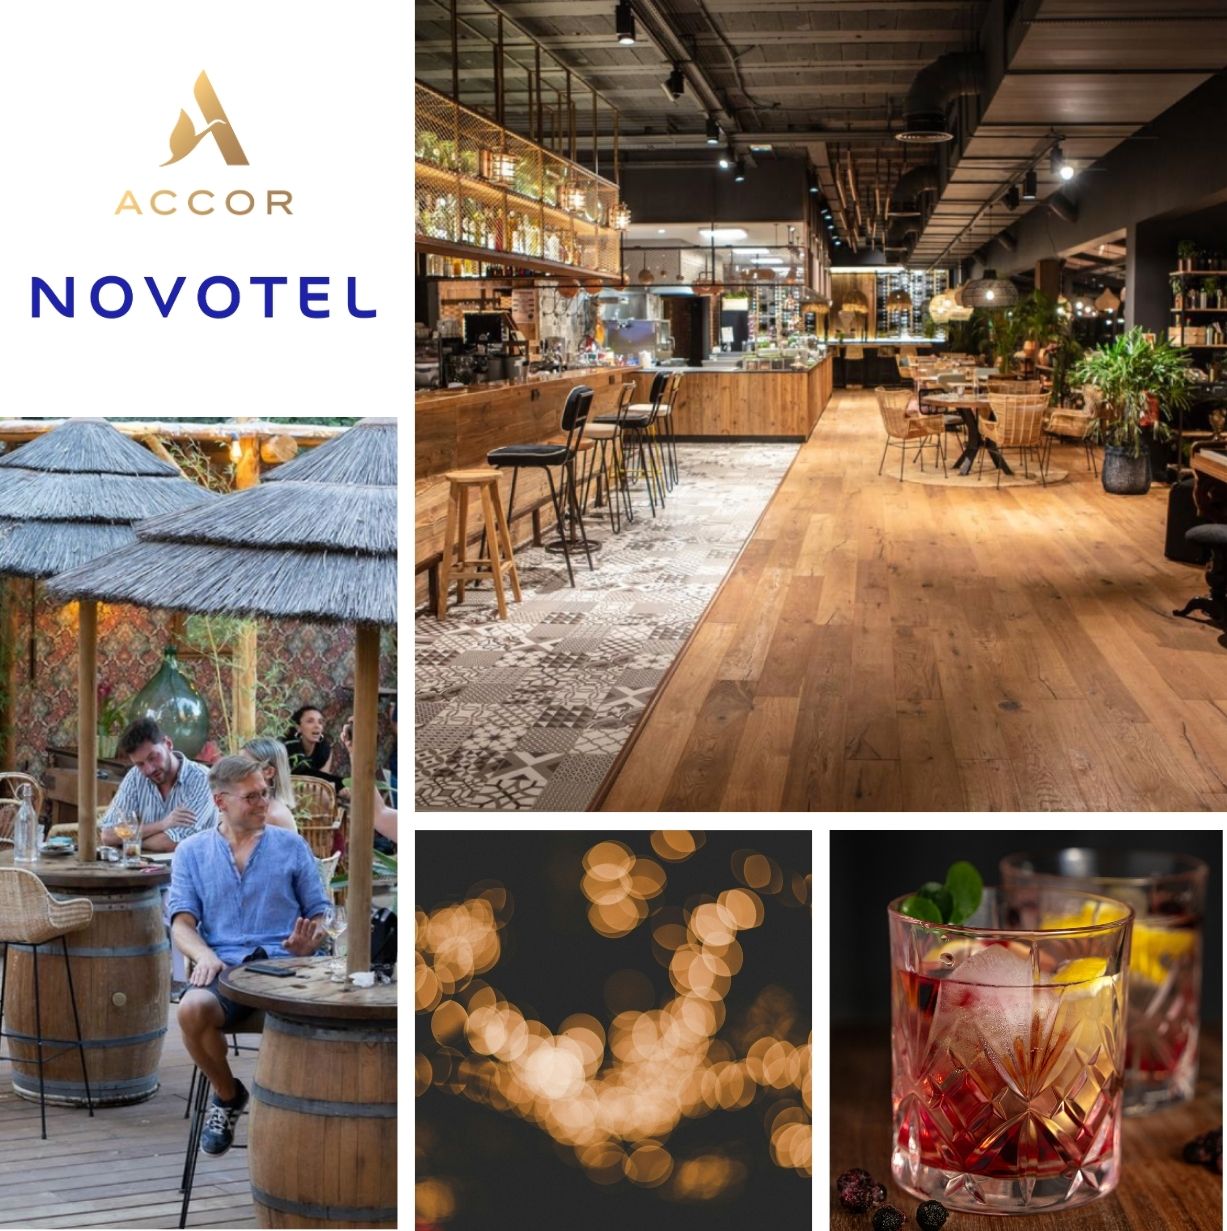 Sélection de photos illustrant la mission de création d'un Social Food Bar au sein de l'hôtel Novotel d'Avignon afin d'attirer à la fois la clientèle extérieure mais également celle hébergée